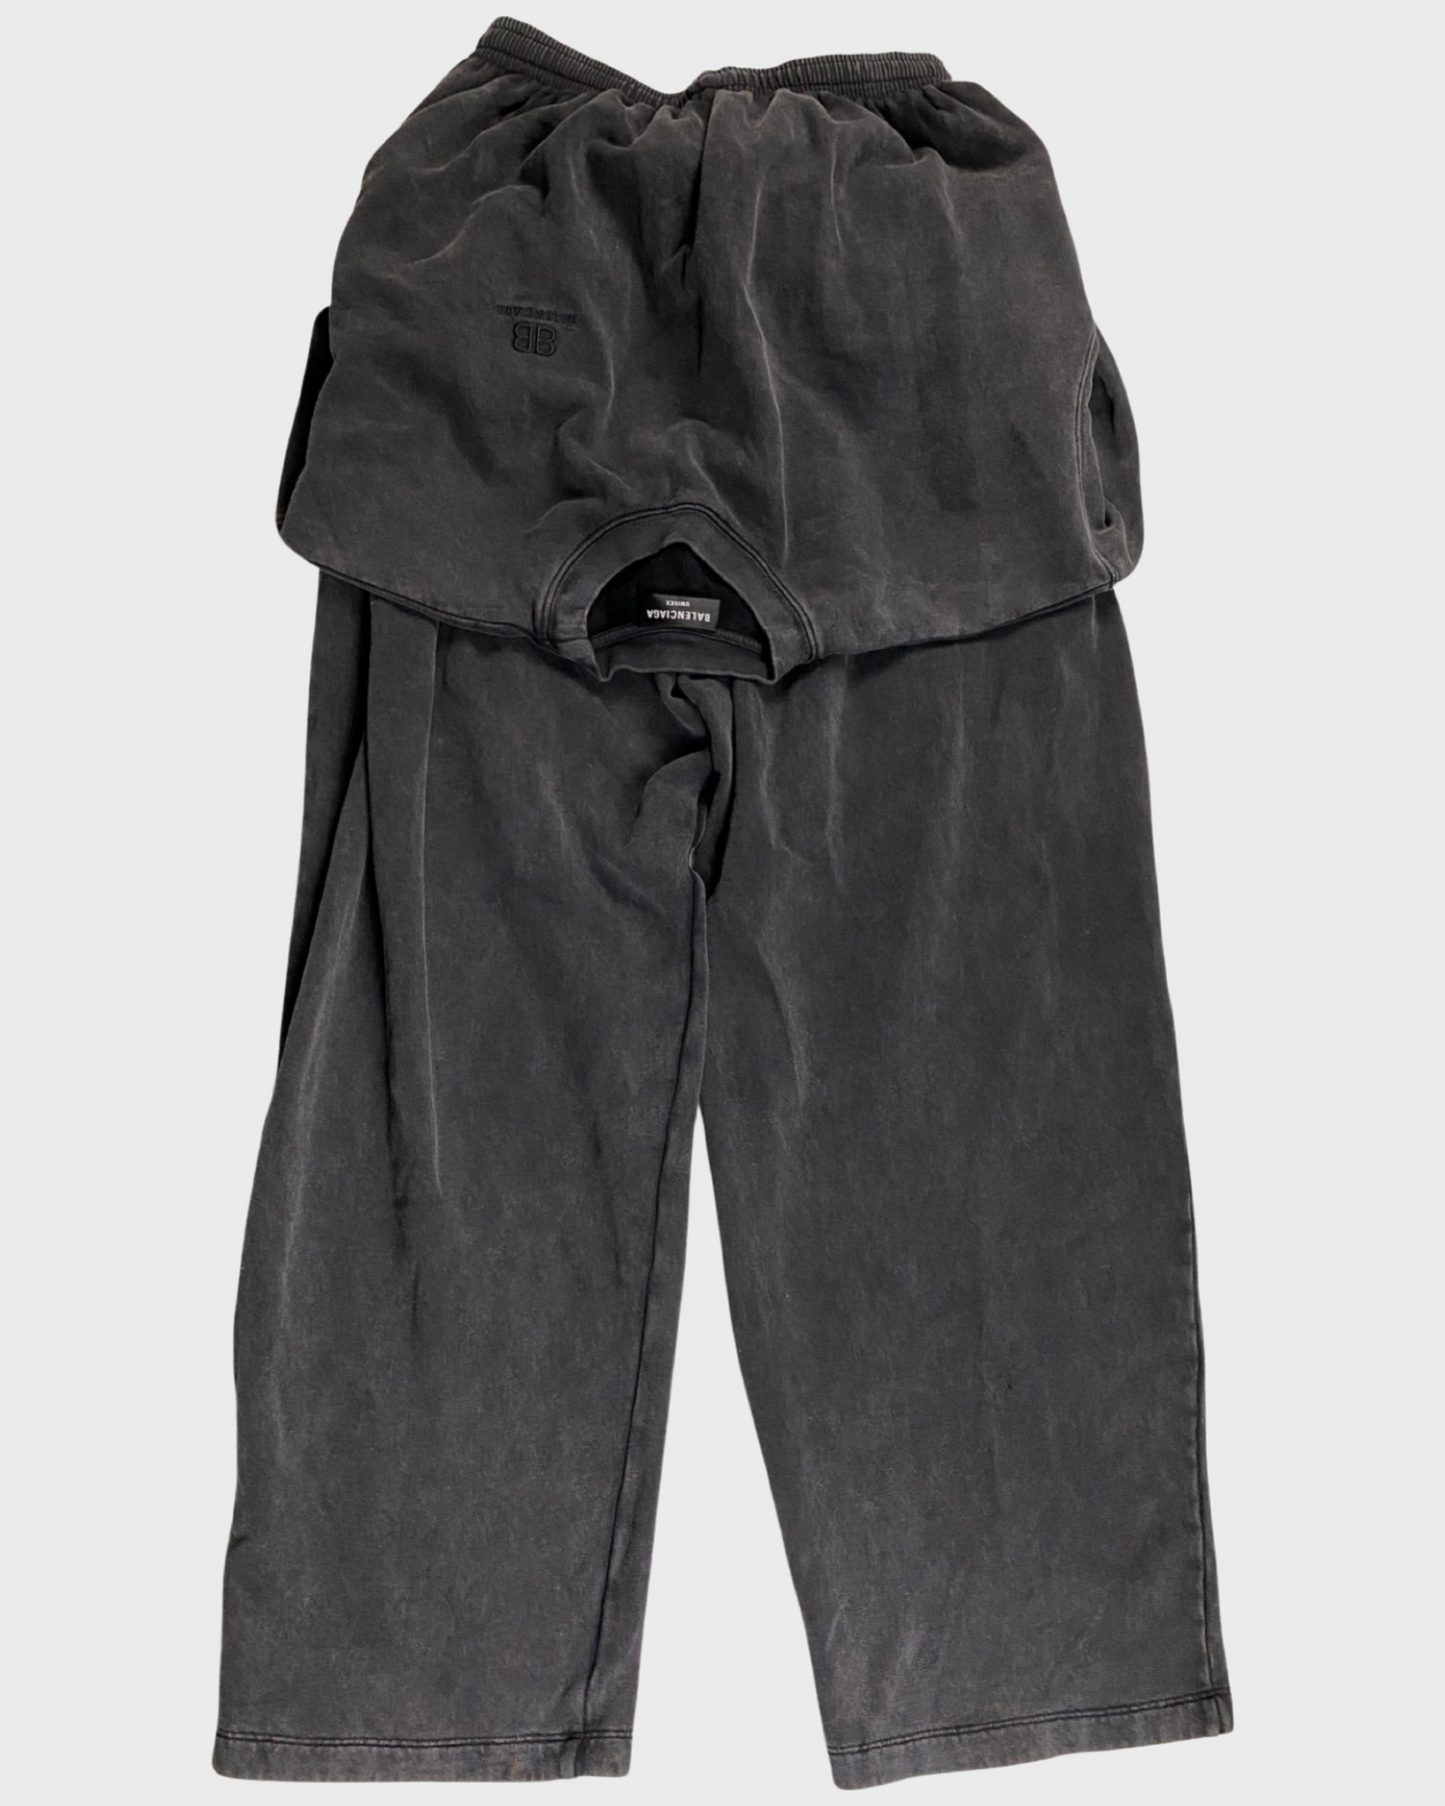 Balenciaga tied up sweater/crewneck sweatpants grey – Bankofgrails